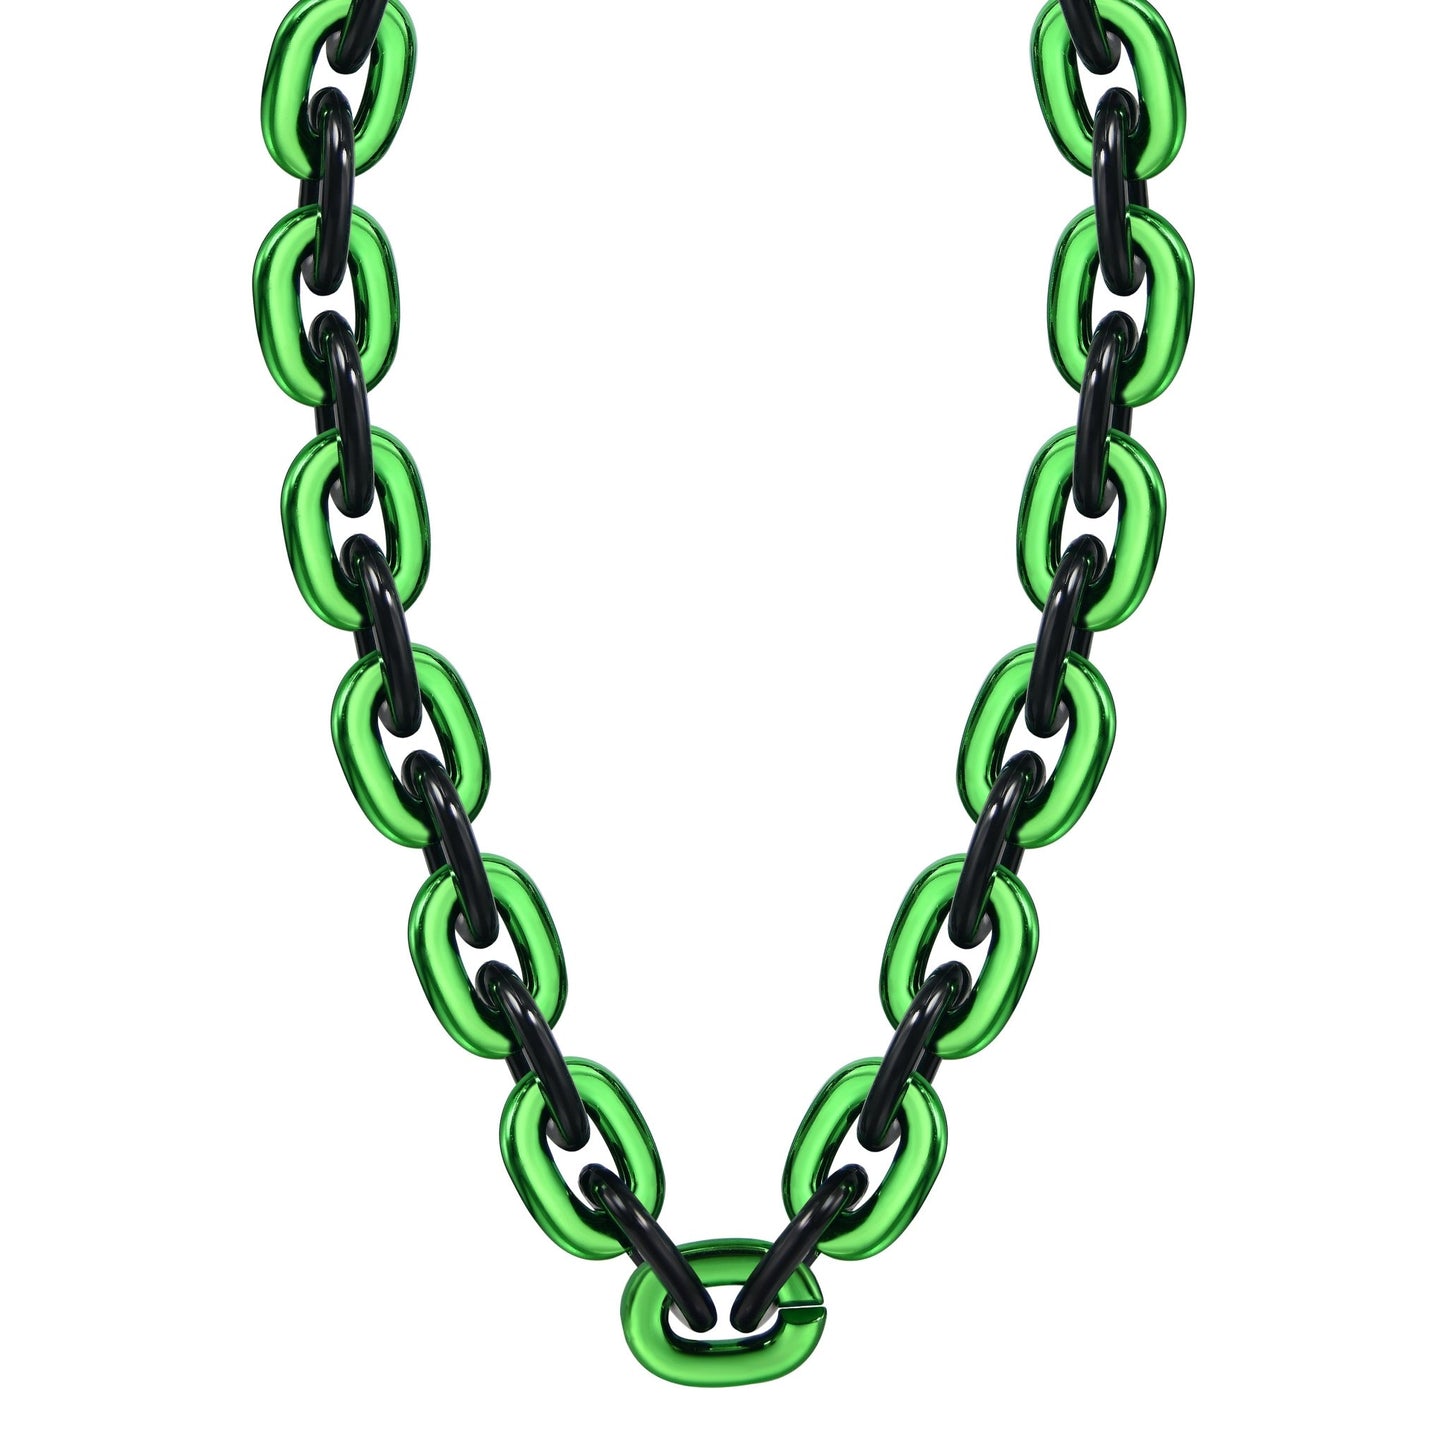 Jumbo Fan Chain Necklace - Gamedays Gear - Green / Black